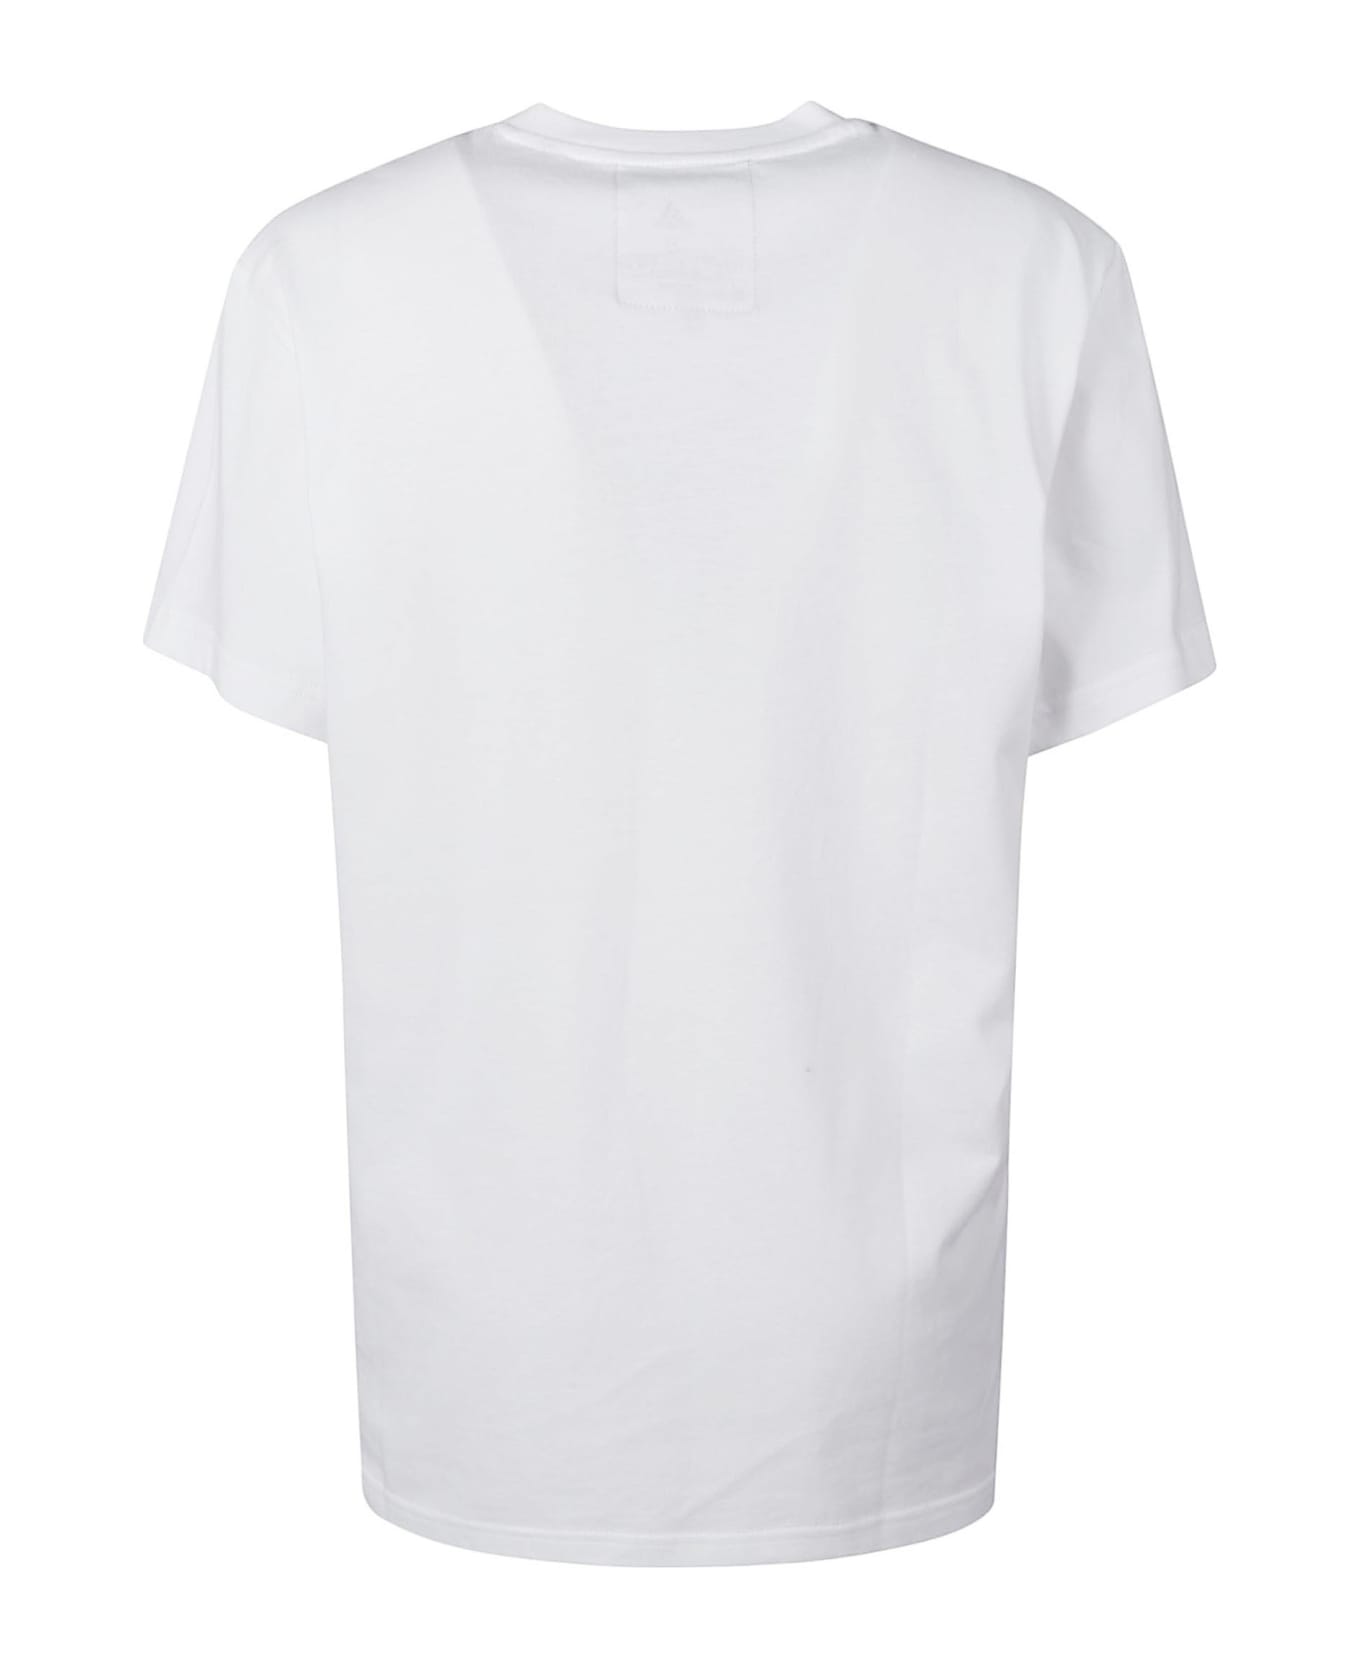 Adidas Logo Embellished T-shirt - White/Azure